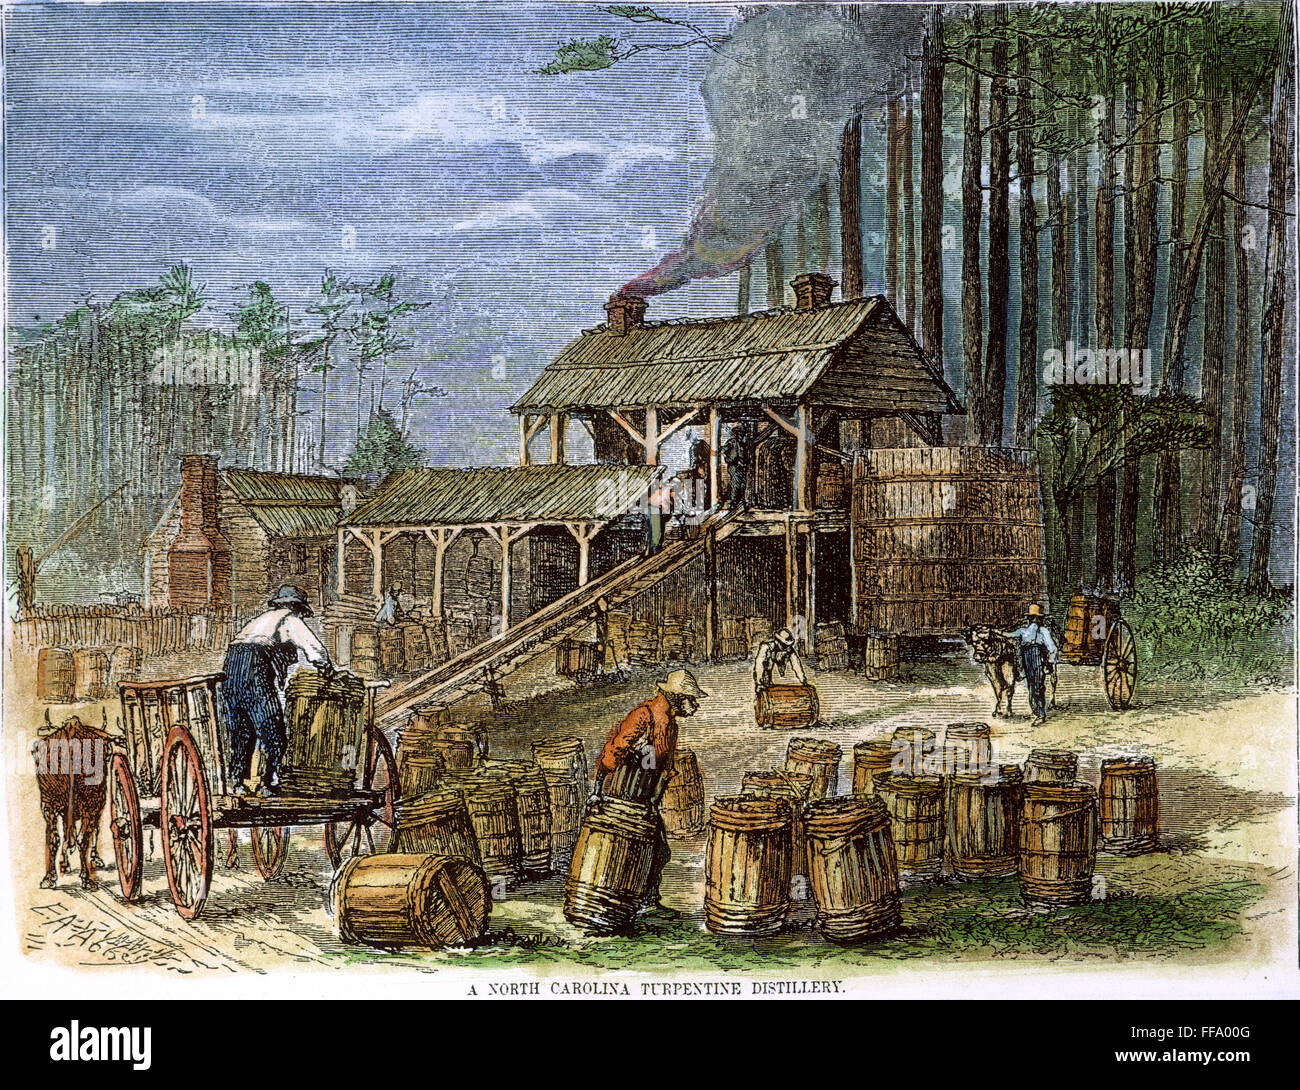 TERPENTIN-BRENNEREI. /nAfrican Amerikaner arbeiten in einer Terpentin-Destillerie in den Pinienwäldern von North Carolina. Farbiger Holzschnitt, amerikanisch, Mitte des 19. Jahrhunderts. Stockfoto